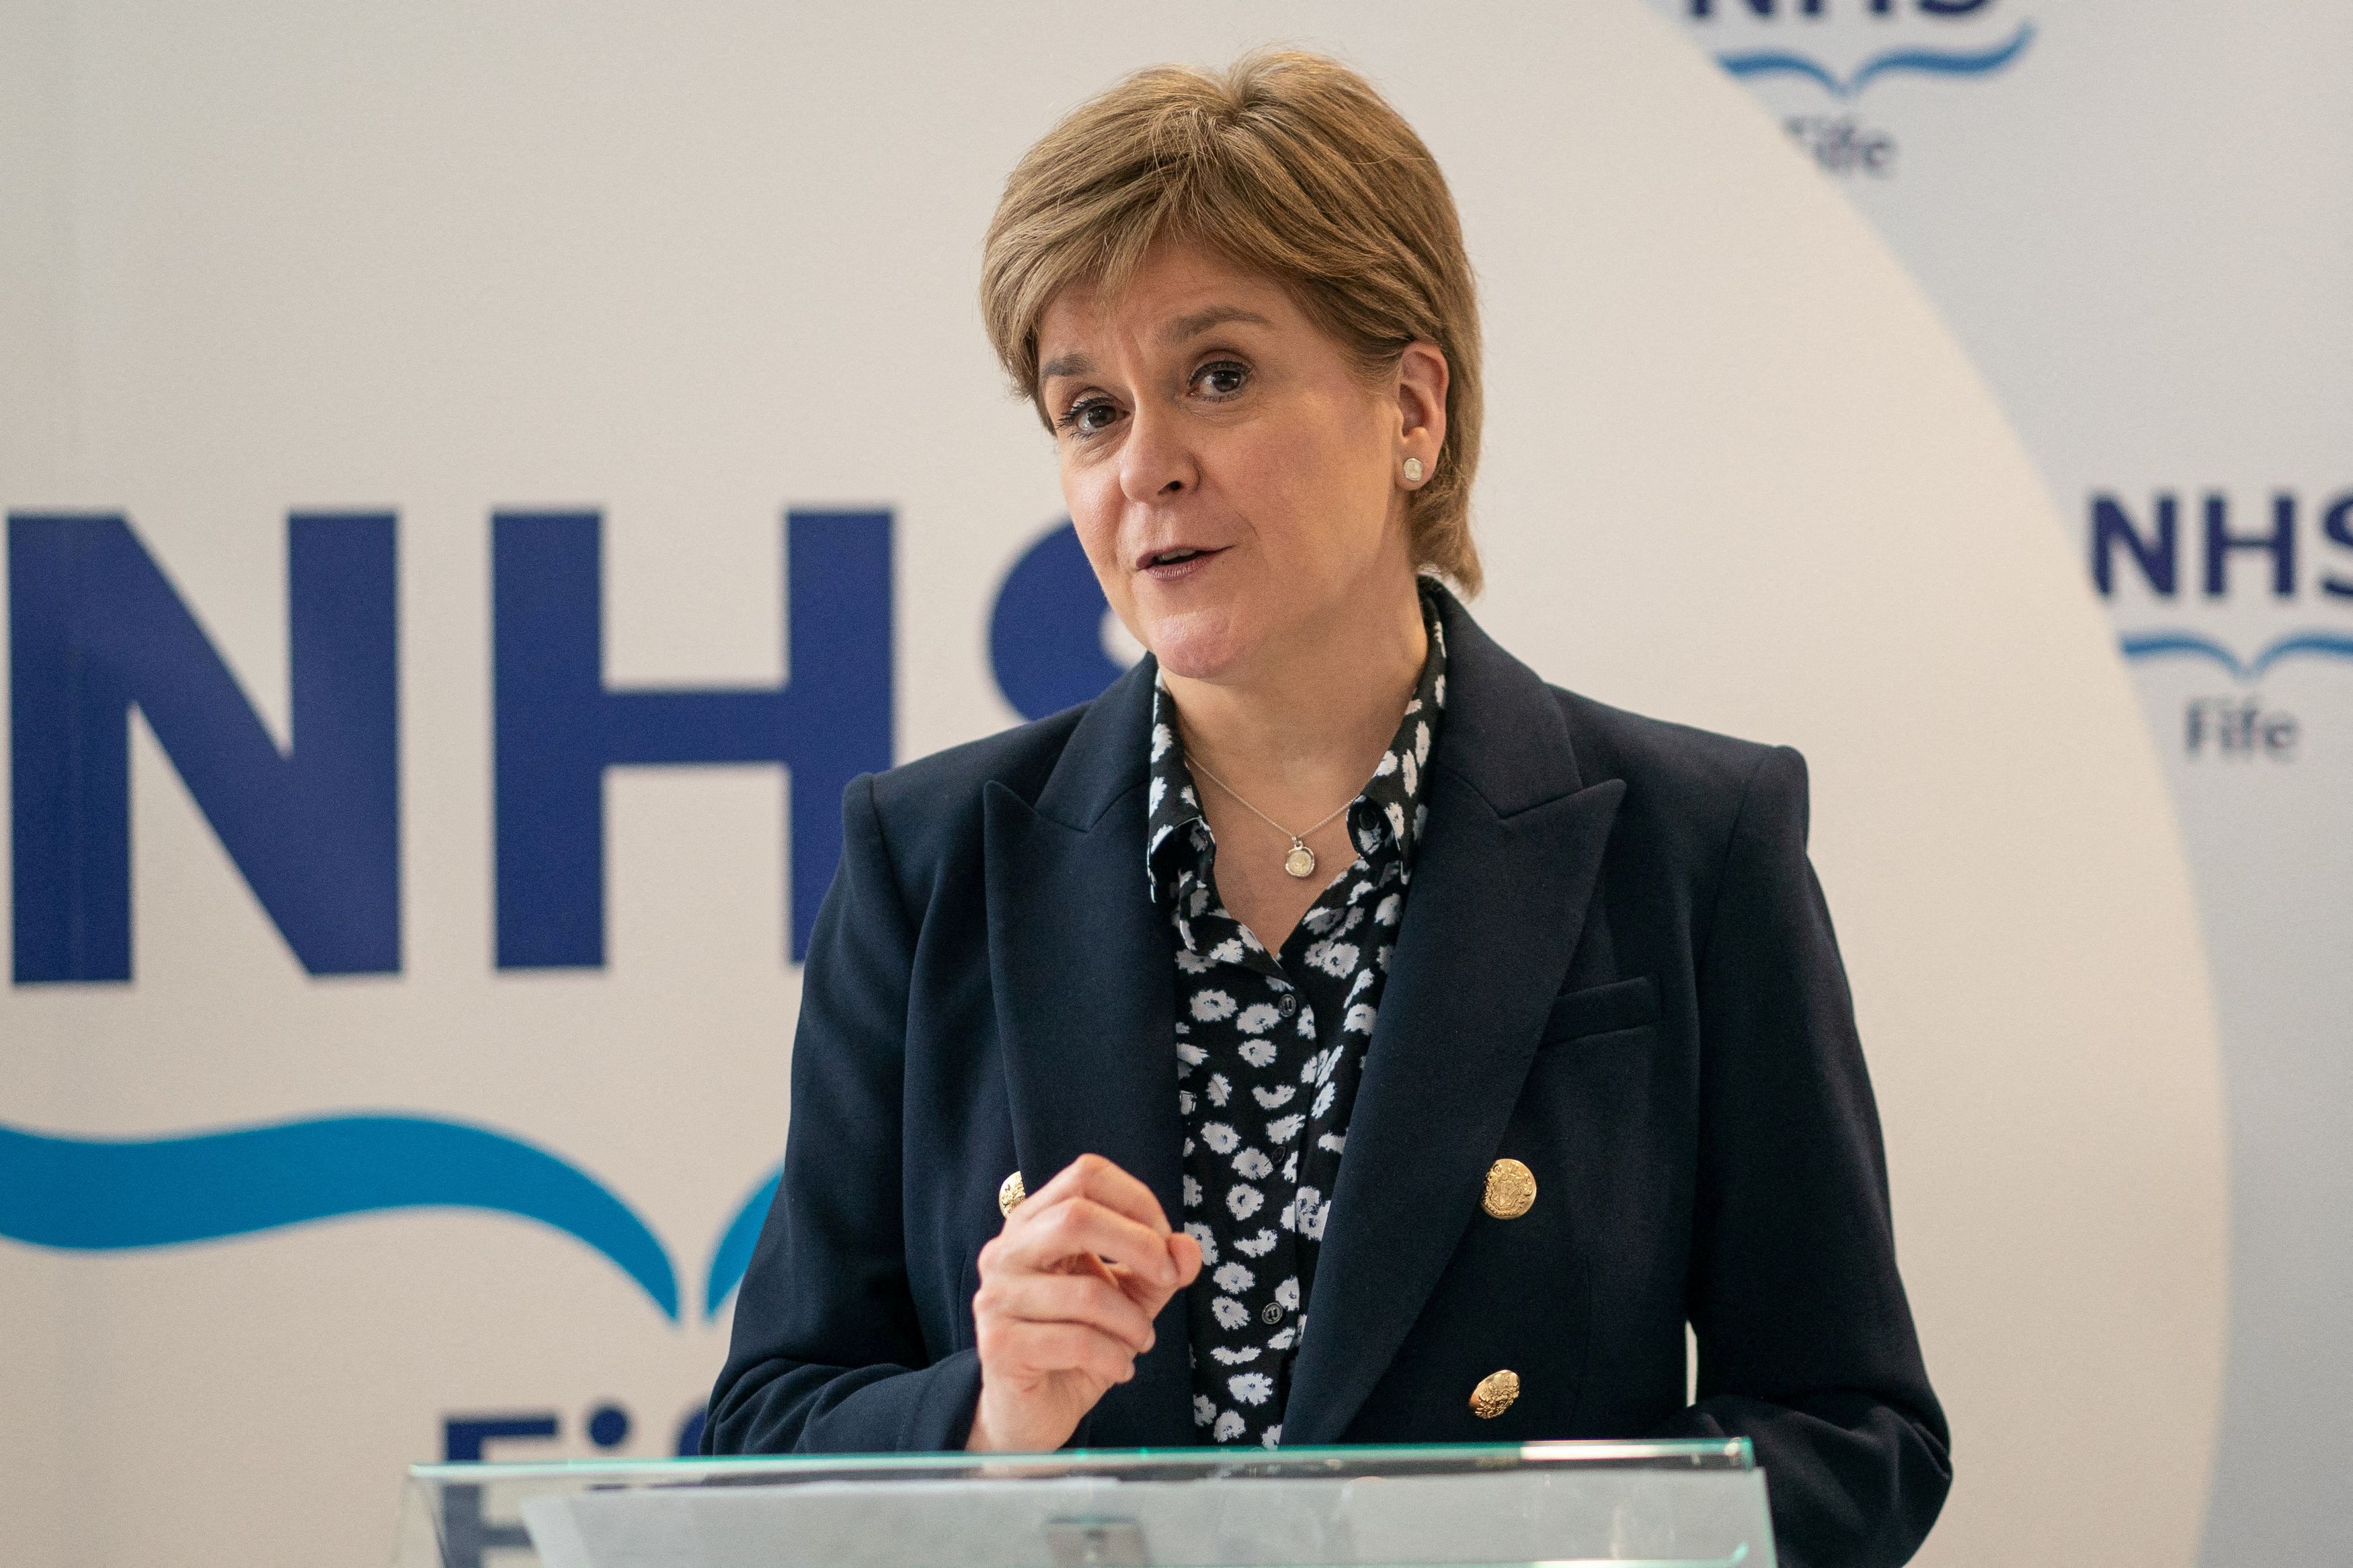 Νίκολα Στάρτζεον: Συνελήφθη η πρώην πρωθυπουργός της Σκωτίας - Έρευνα για τα οικονομικά του SNP